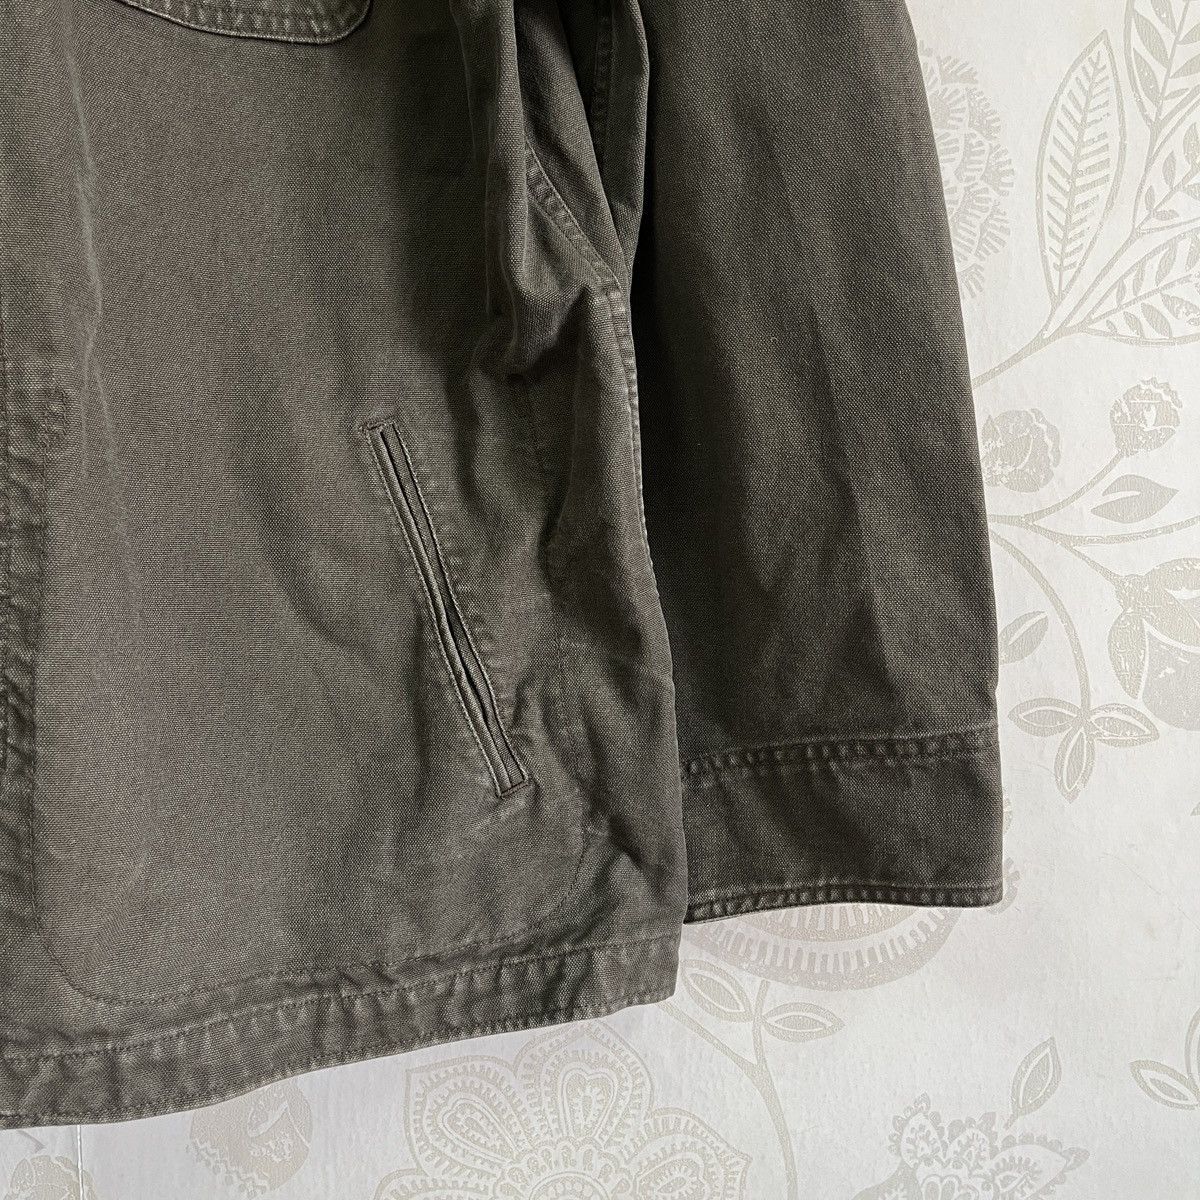 Uniqlo Chore Jacket Japan Size XL - 8